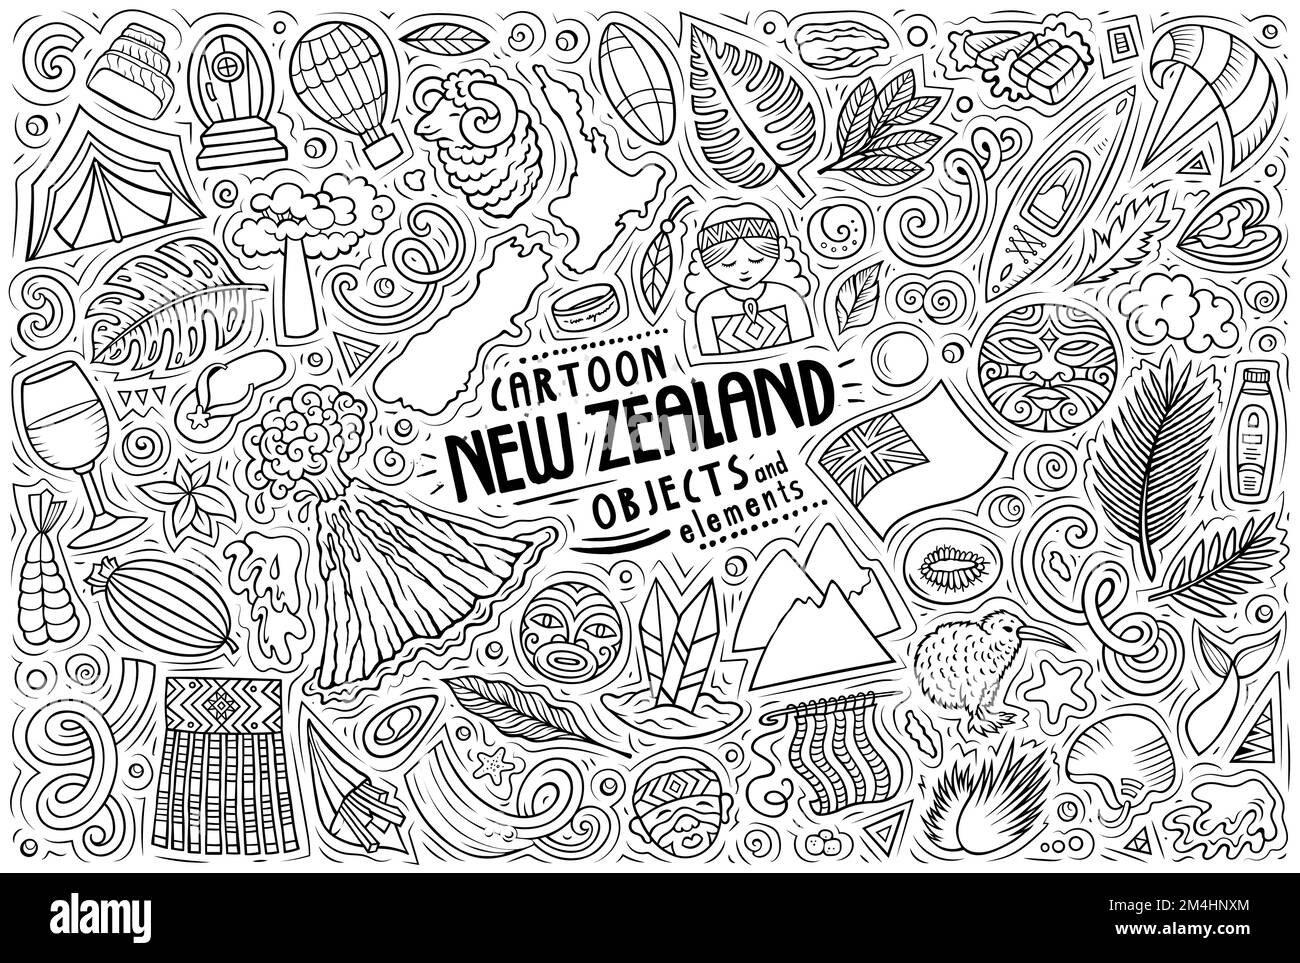 Cartoon vettore doodle insieme di simboli, oggetti e oggetti tradizionali neozelandesi Illustrazione Vettoriale